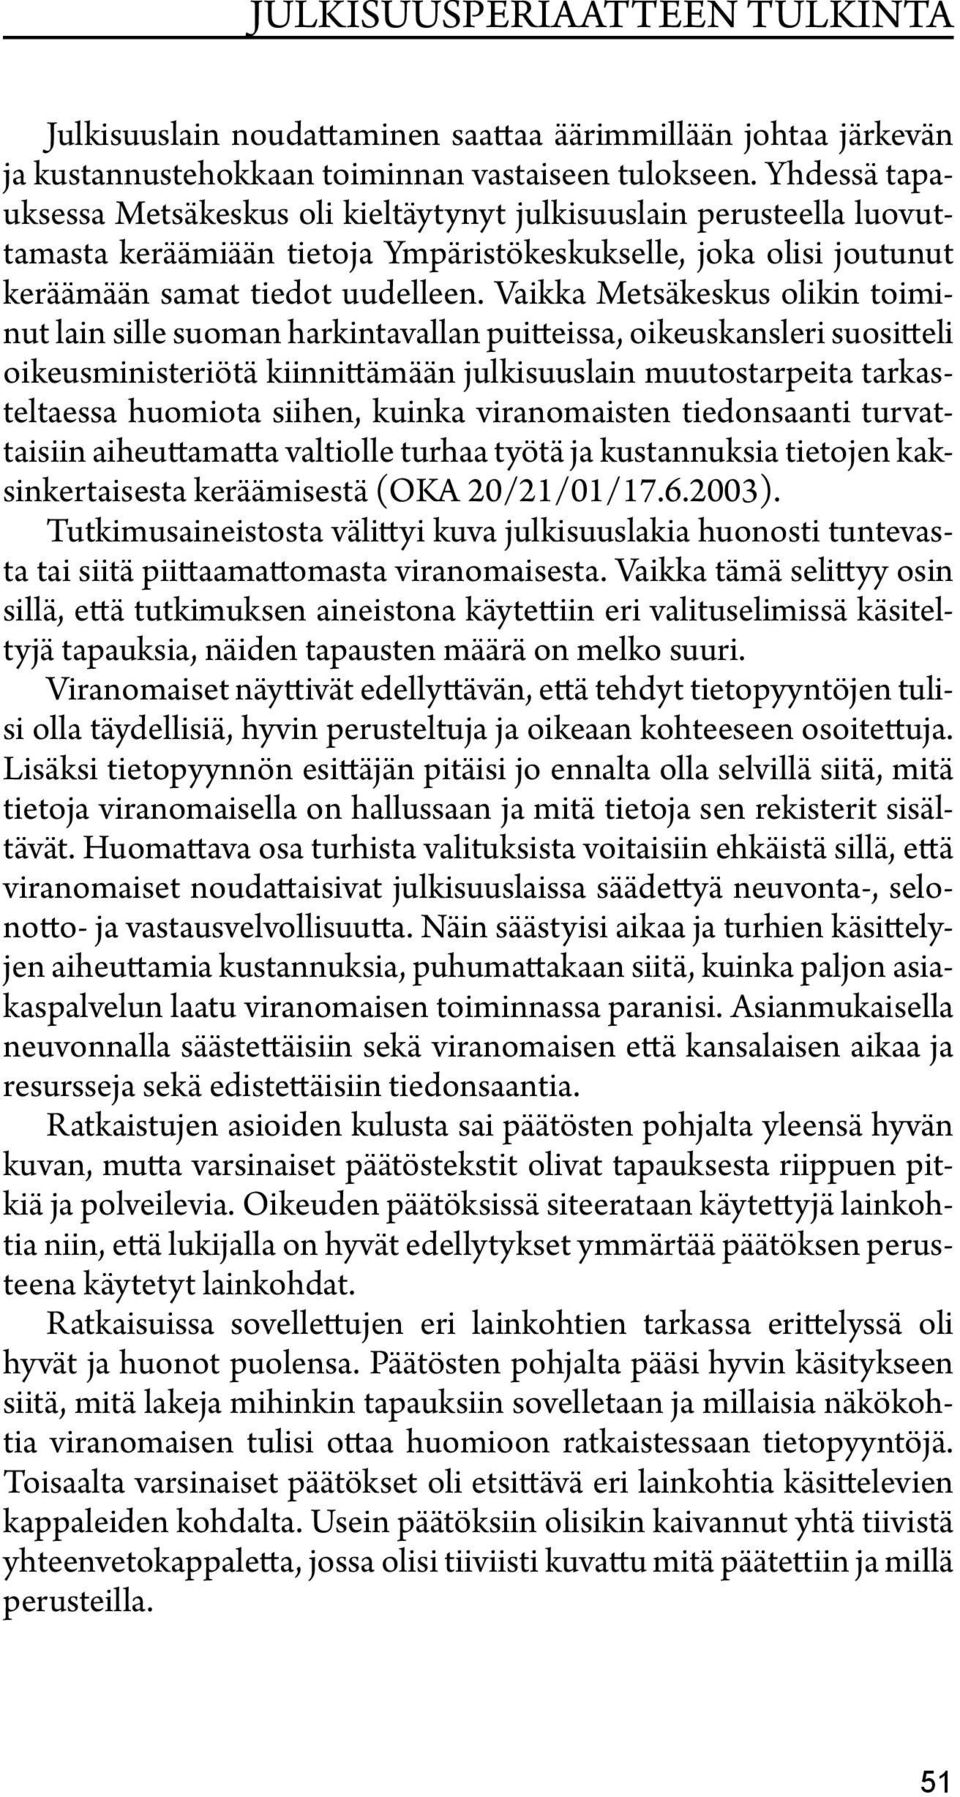 Vaikka Metsäkeskus olikin toiminut lain sille suoman harkintavallan puitteissa, oikeuskansleri suositteli oikeusministeriötä kiinnittämään julkisuuslain muutostarpeita tarkasteltaessa huomiota